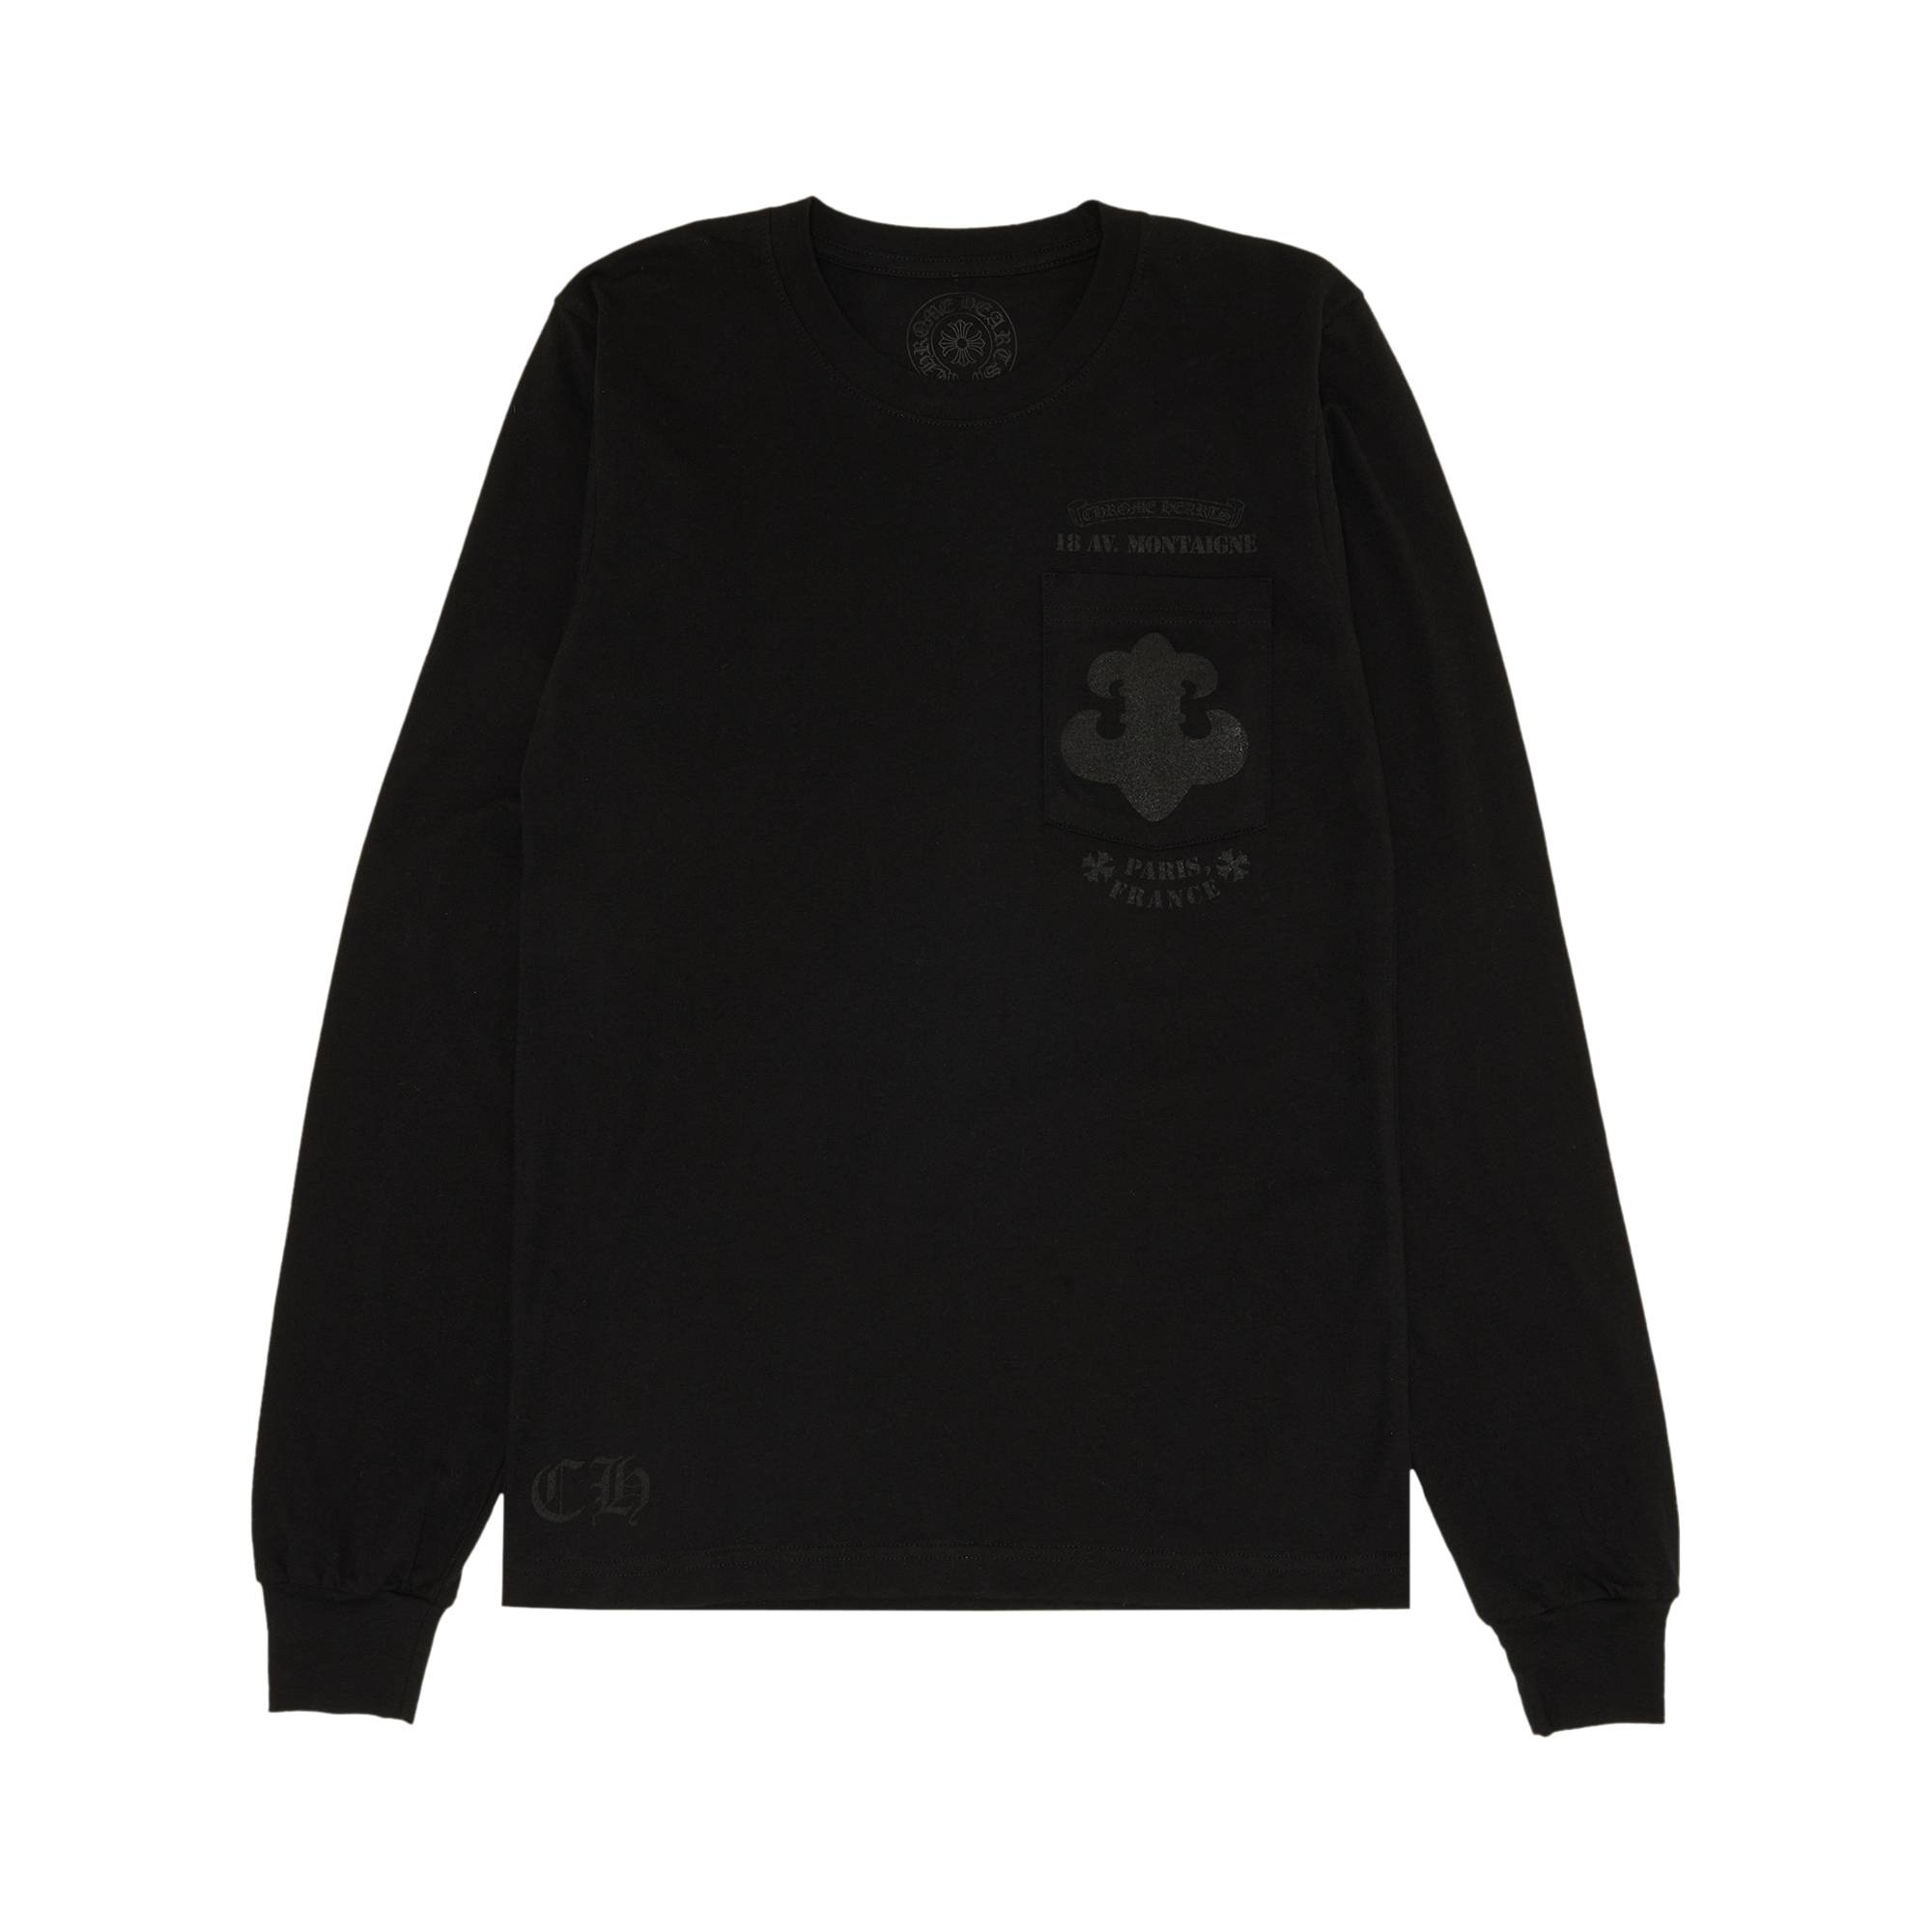 Chrome Hearts Paris Exclusive Long-Sleeve T-Shirt 'Black' - 1